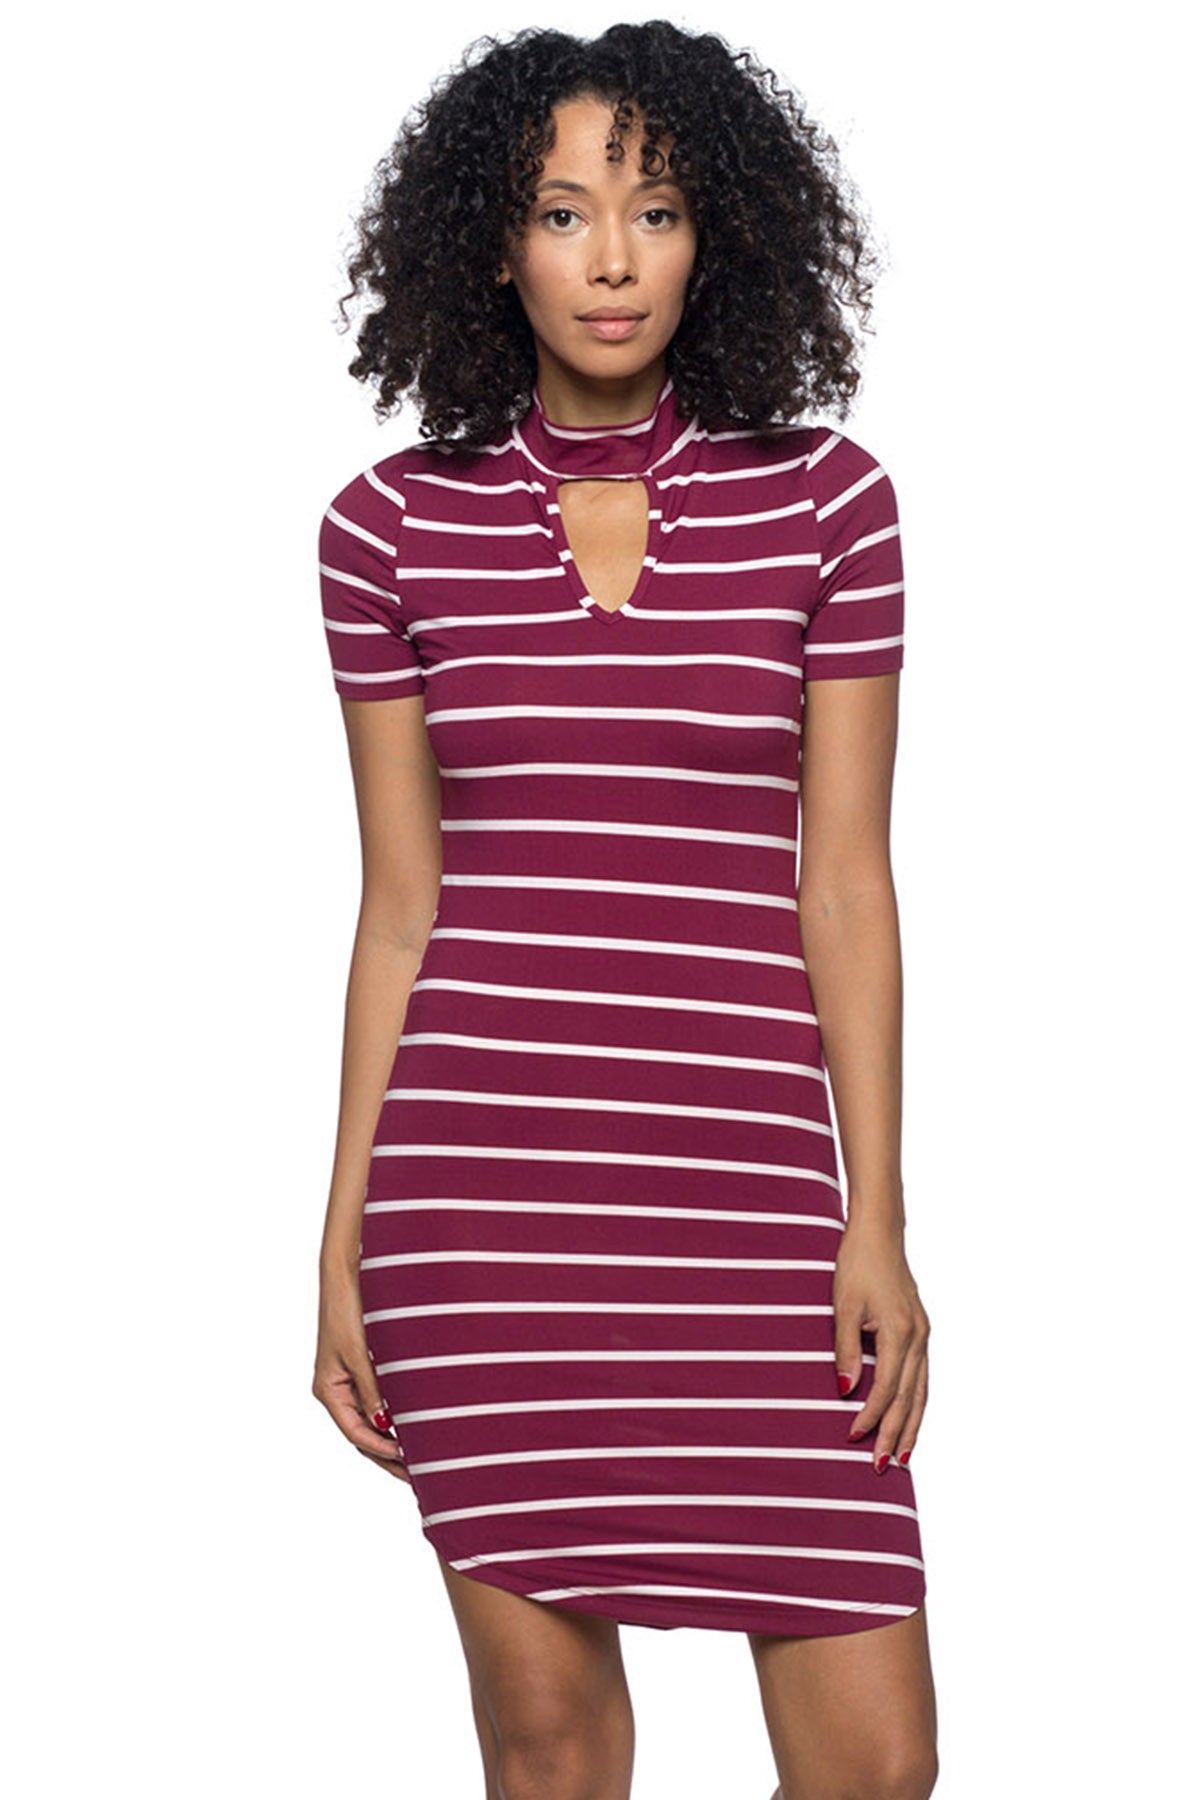 [$3/piece] Striped Chocker Neck Bodycon Dress